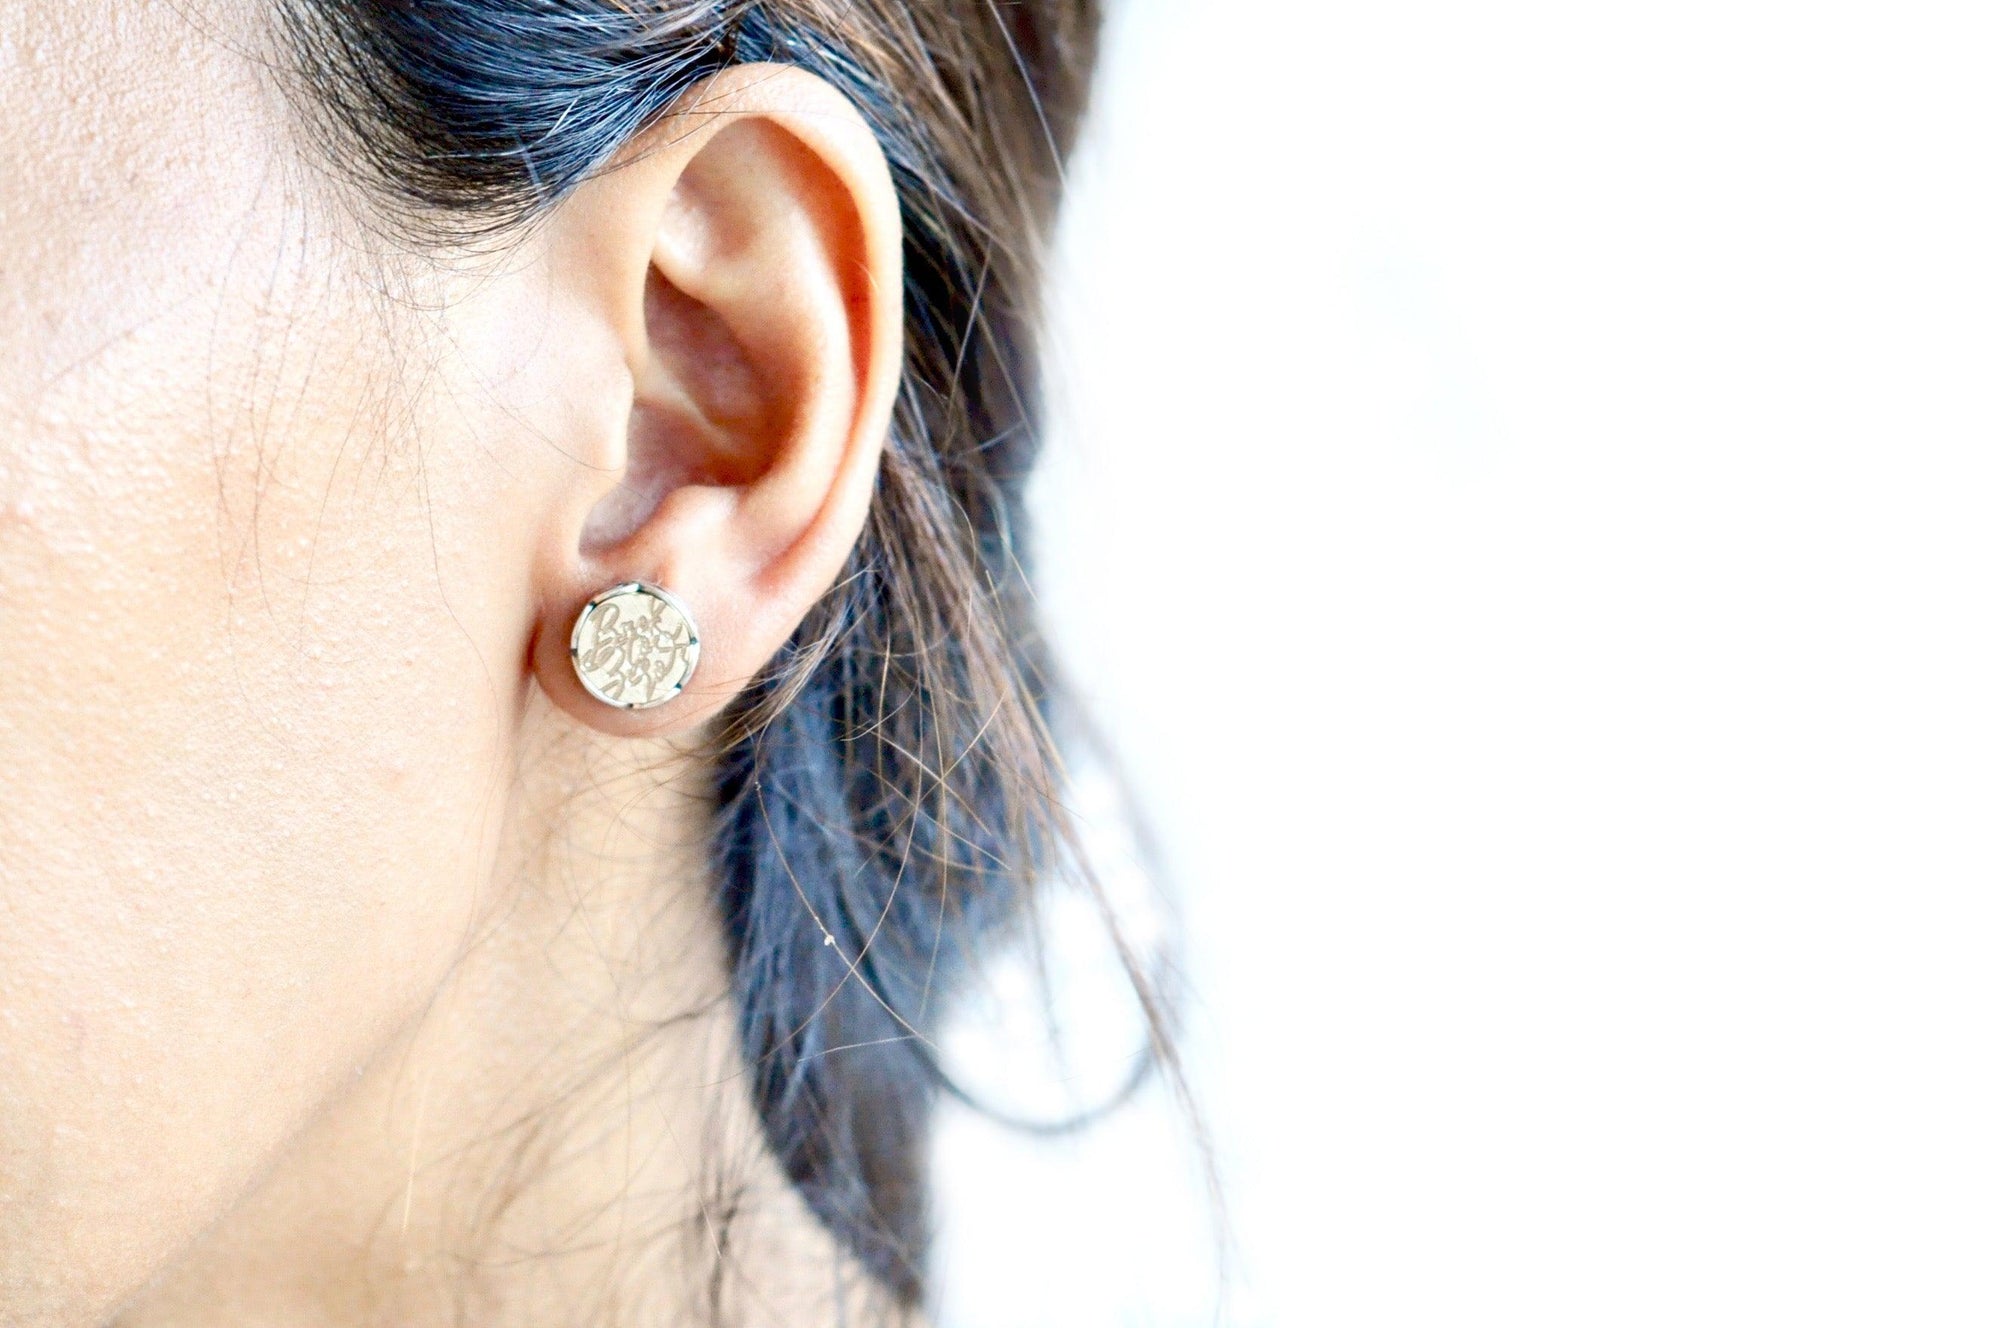 Design your own Scalloped Signet Earrings - Backtozero B20 - accessory, bespoke, Custom, custom earrings, customsignet, Design Your Own, earrings, her, jewelry, Scalloped, scalloped earrings, scallopedearrings, signet